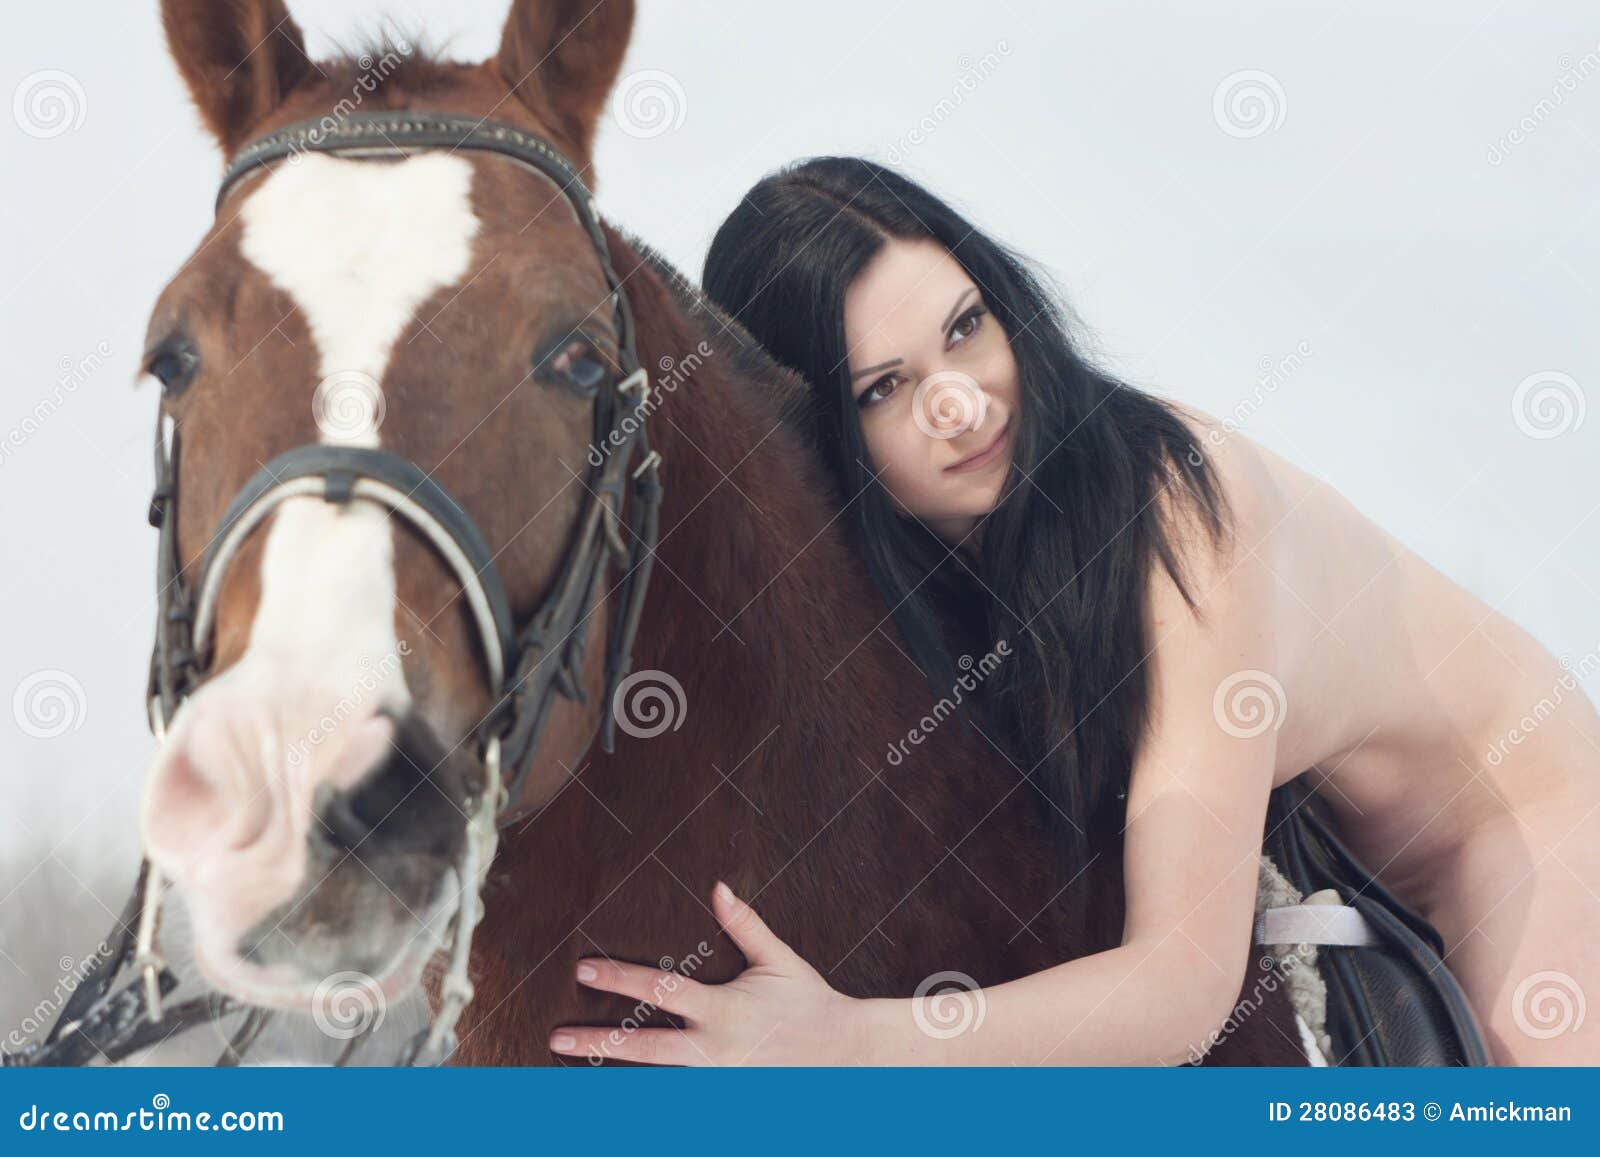 Naked girl horse